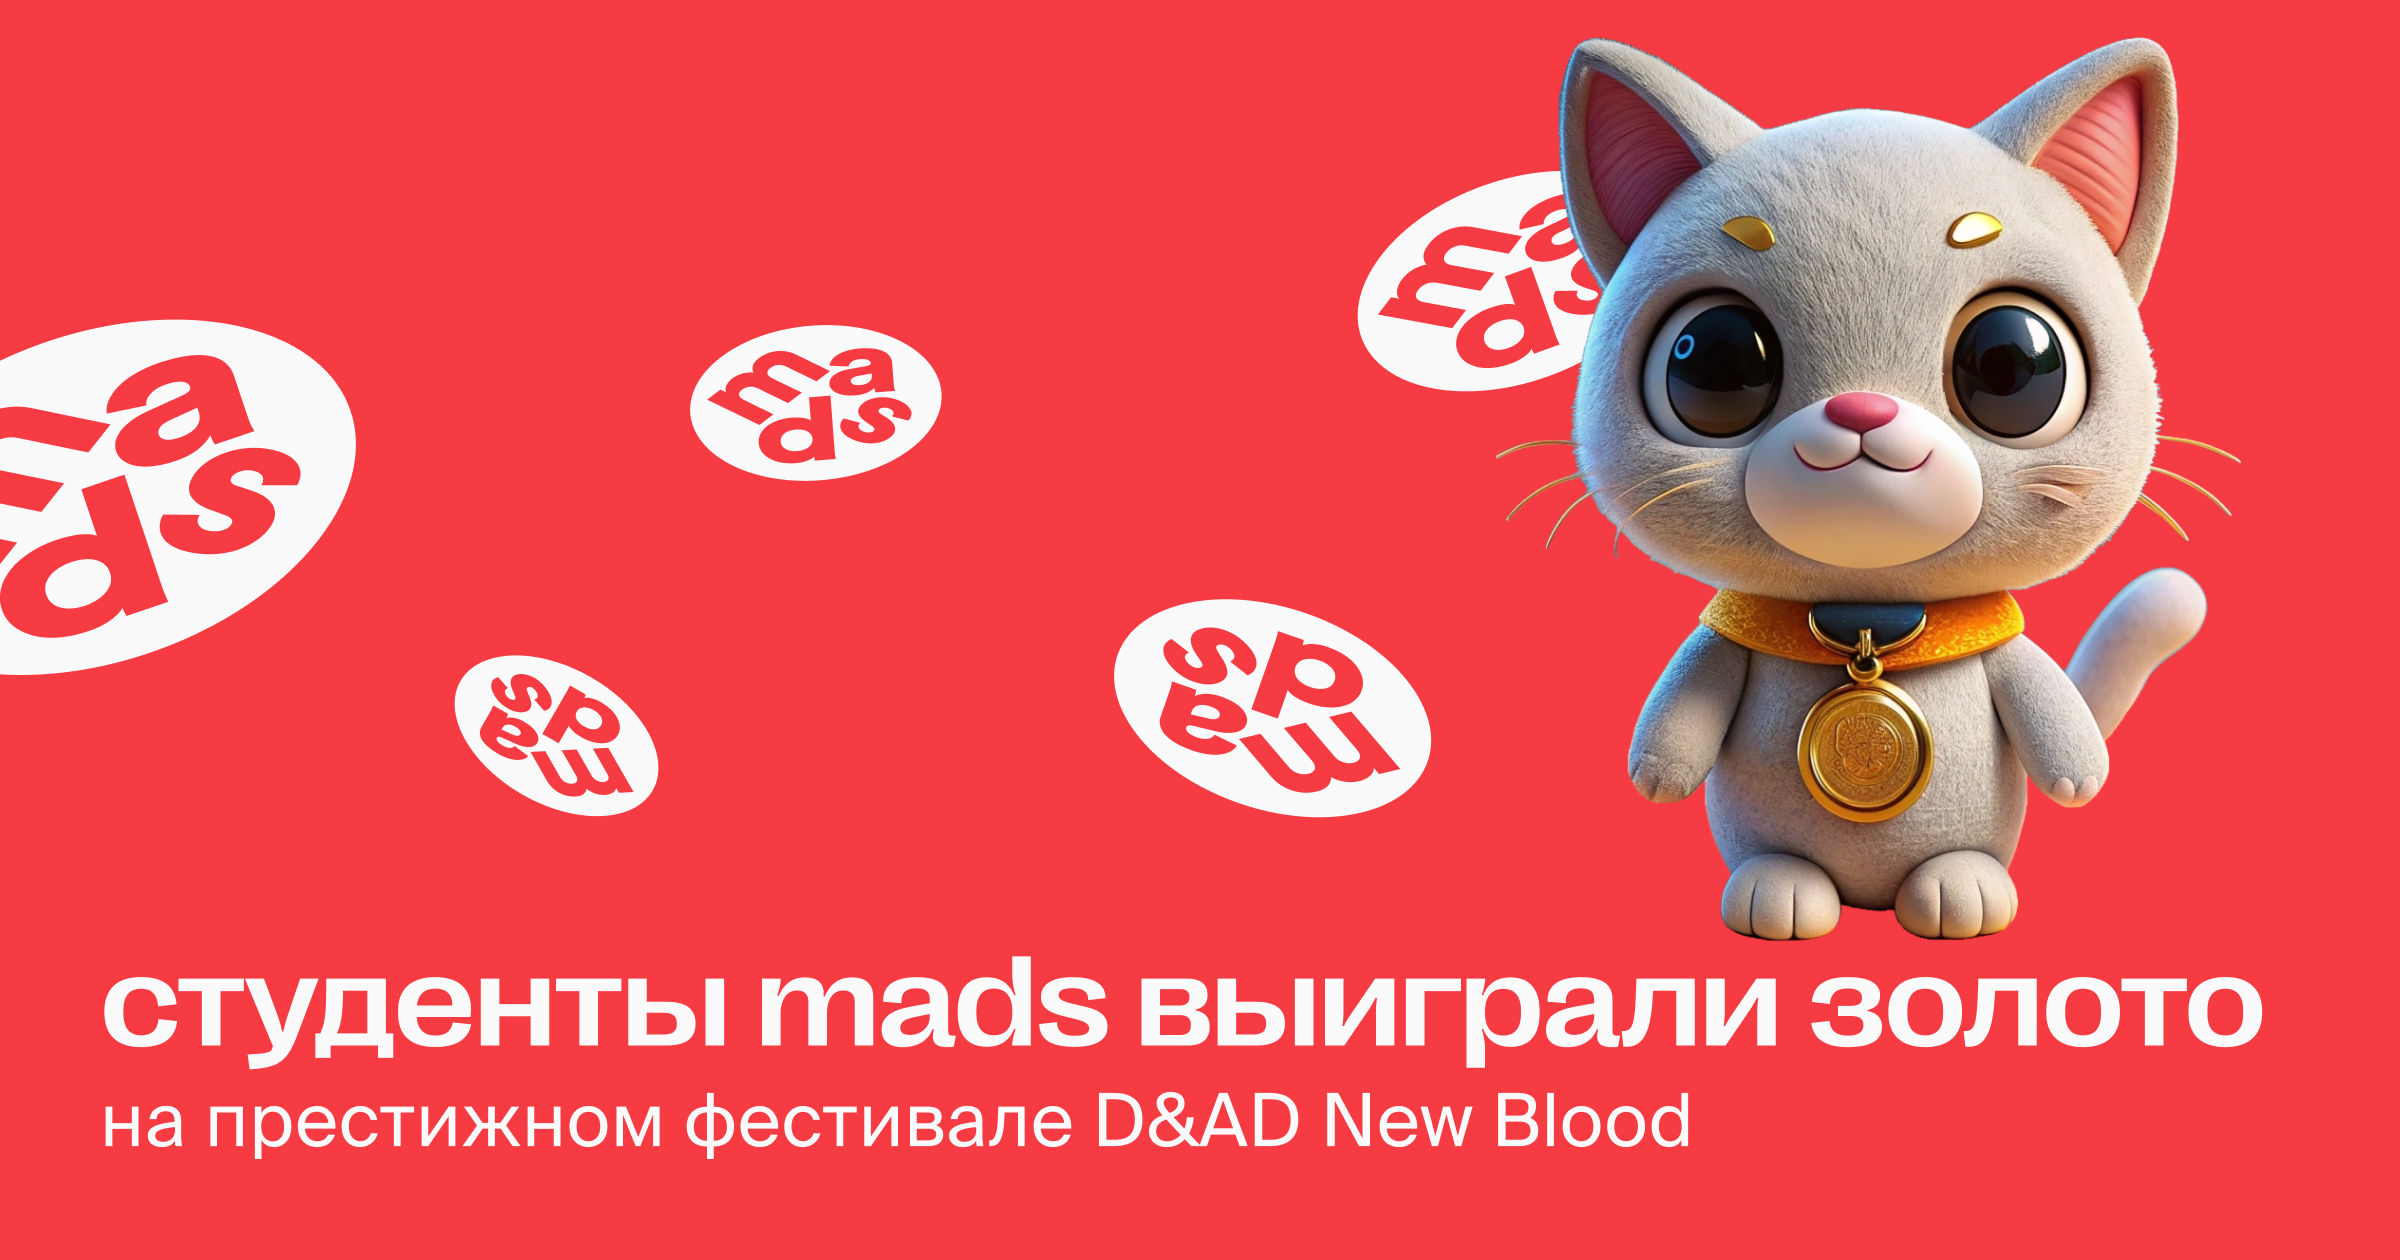 Студенты mads выиграли золото на фестивале D&AD New Blood и 5 других наград в конкурсах